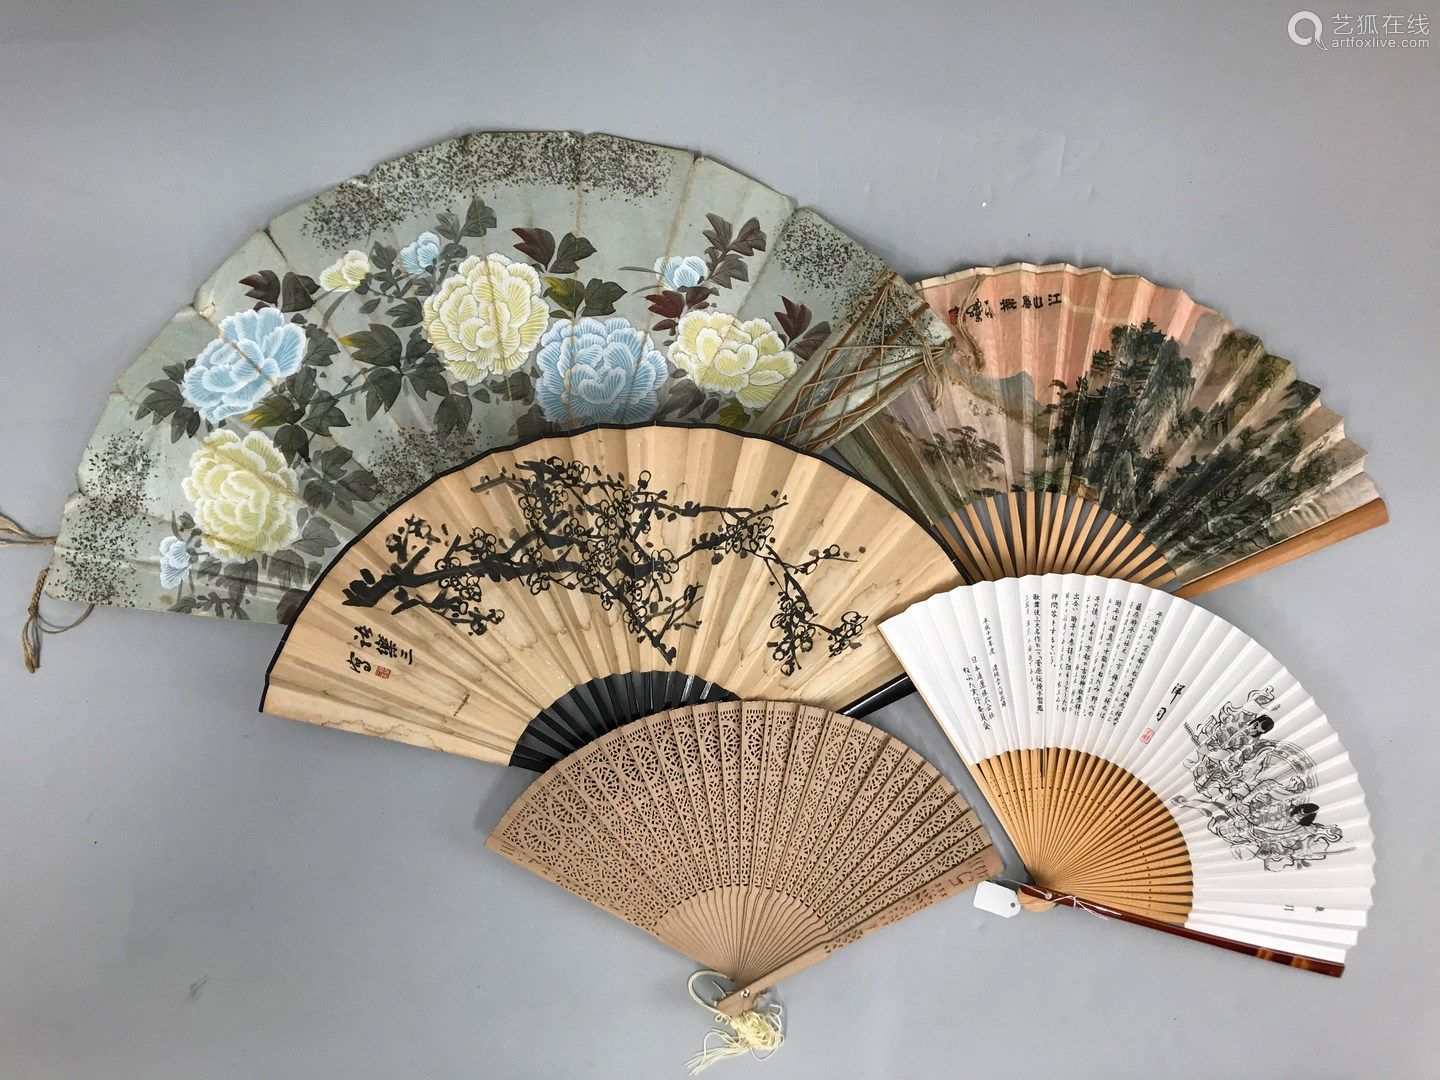 五扇子 亚洲 世纪包括四位中国粉丝和一位叫 舞扇 的日本粉丝 竹制框架 Deal Price Picture